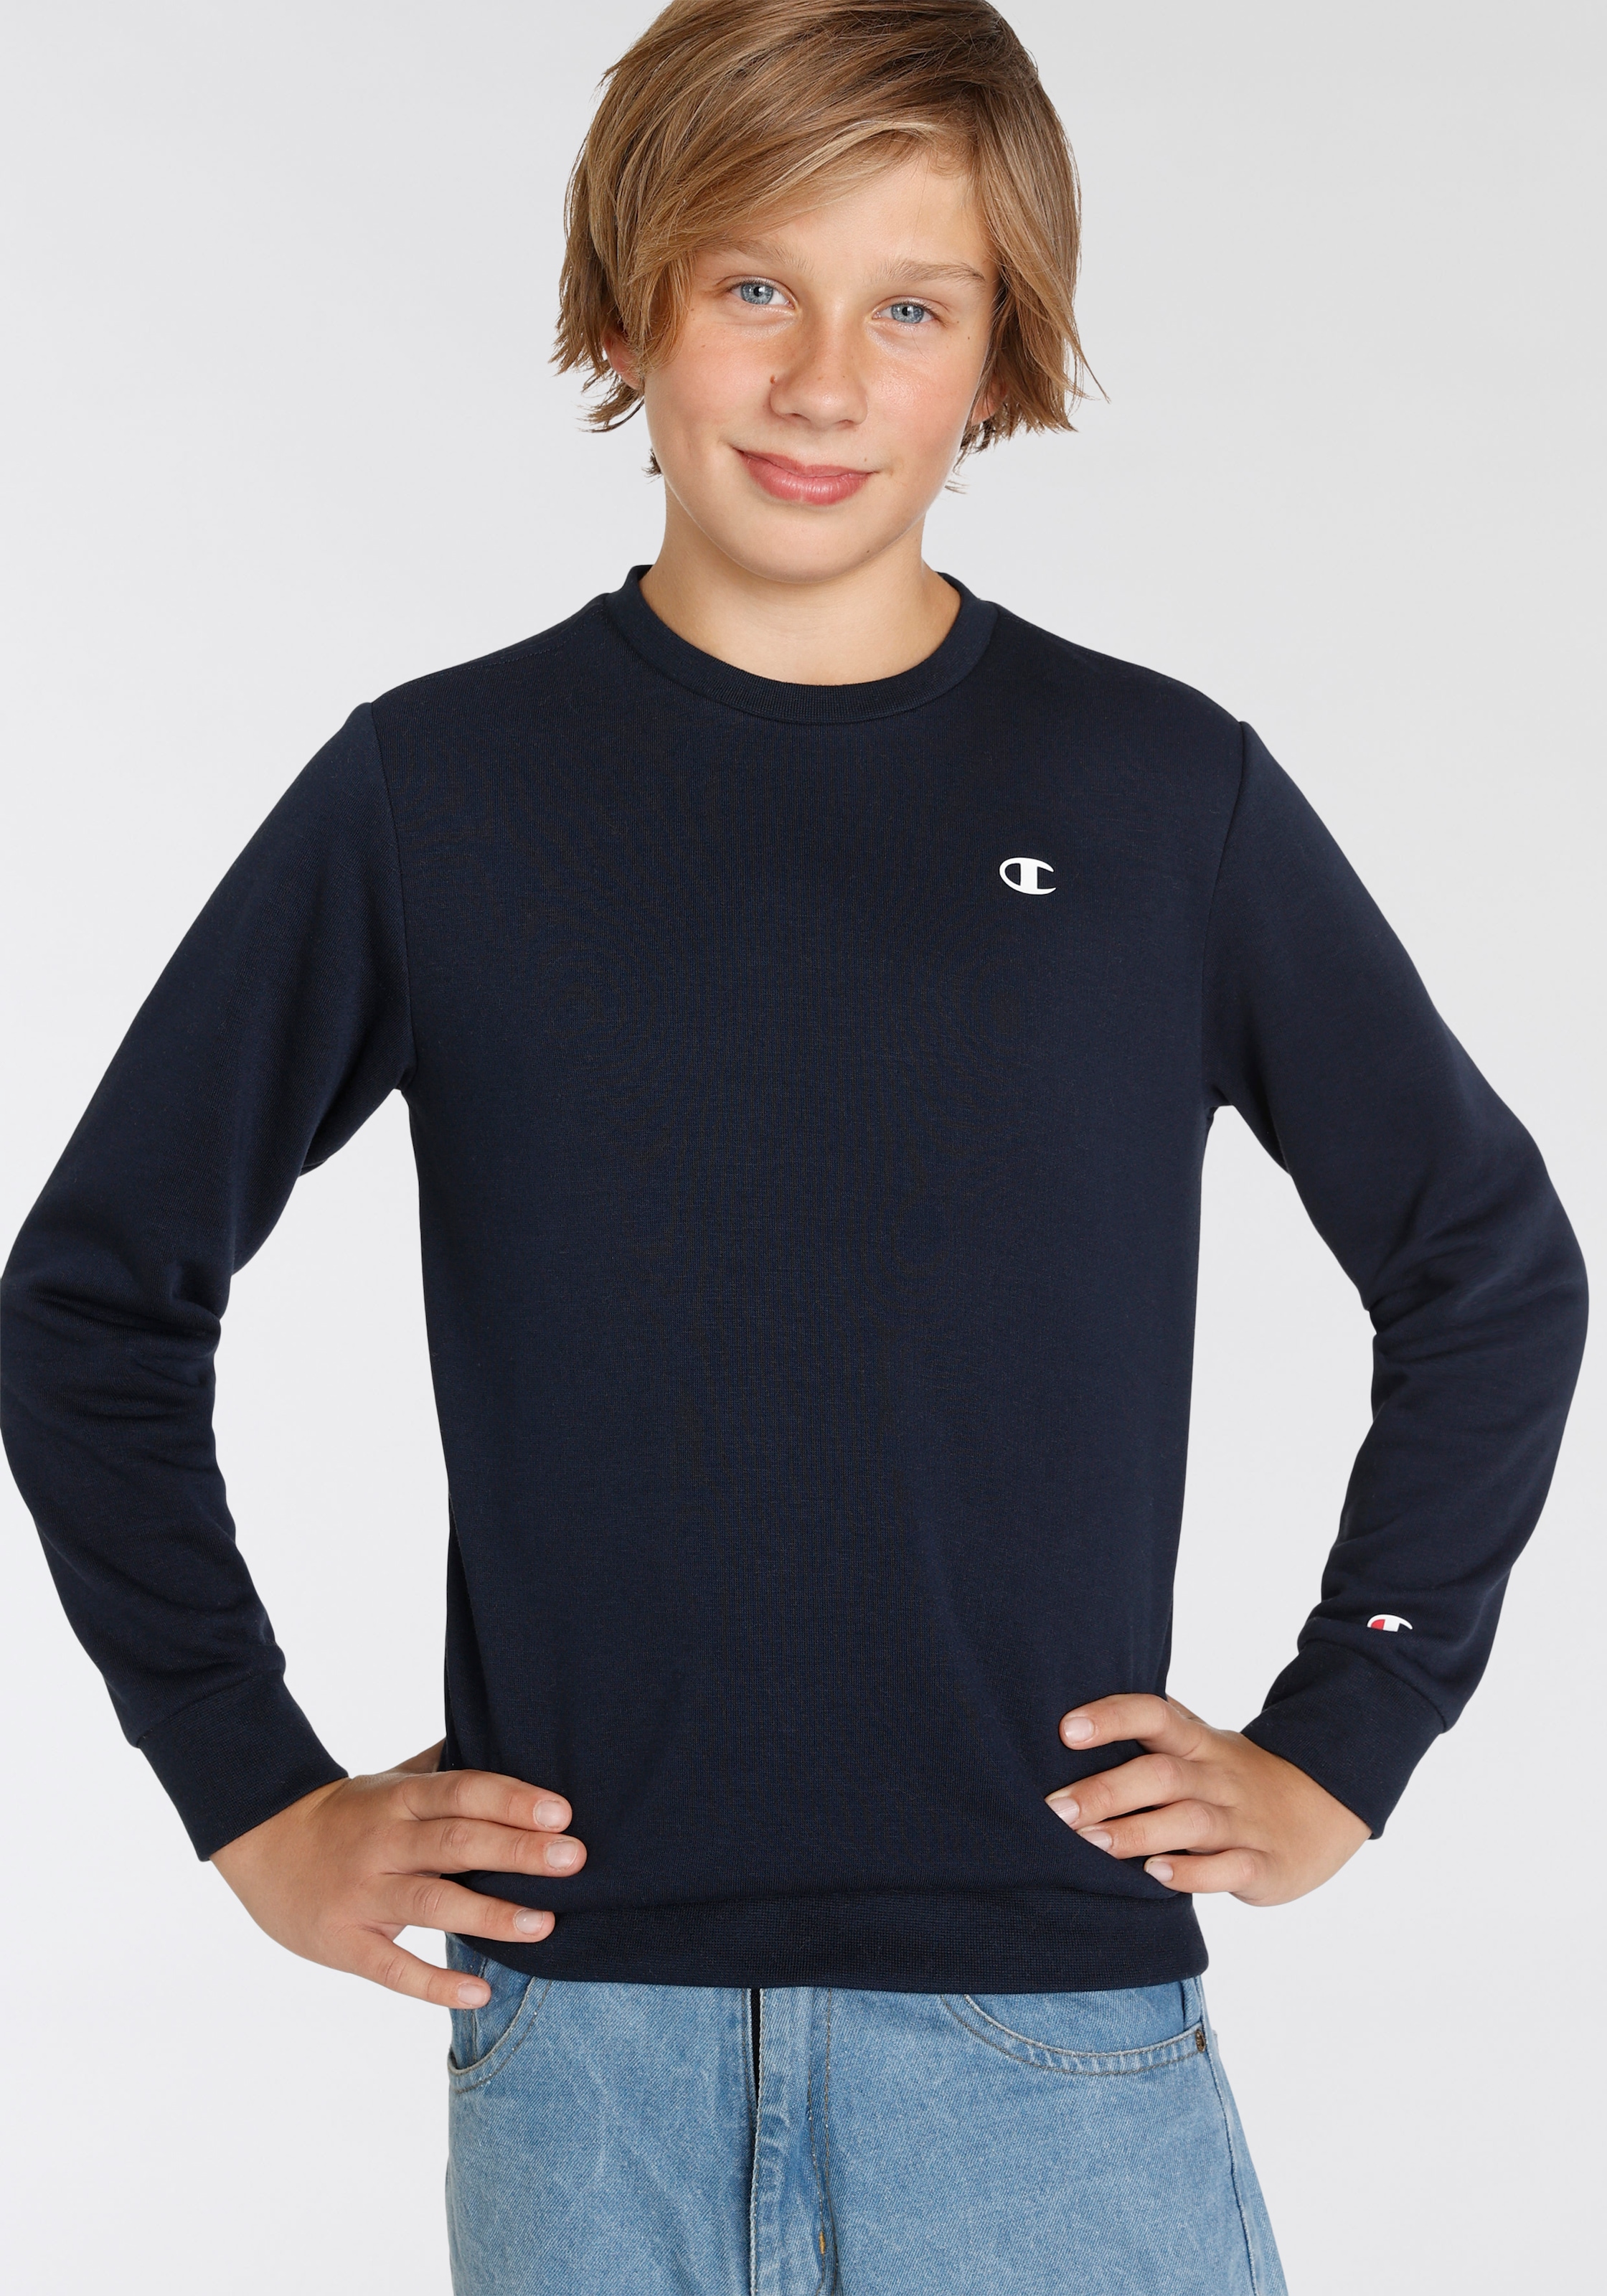 Trendige Champion Sweatshirt »Basic Crewneck Sweatshirt - für Kinder« ohne  Mindestbestellwert kaufen